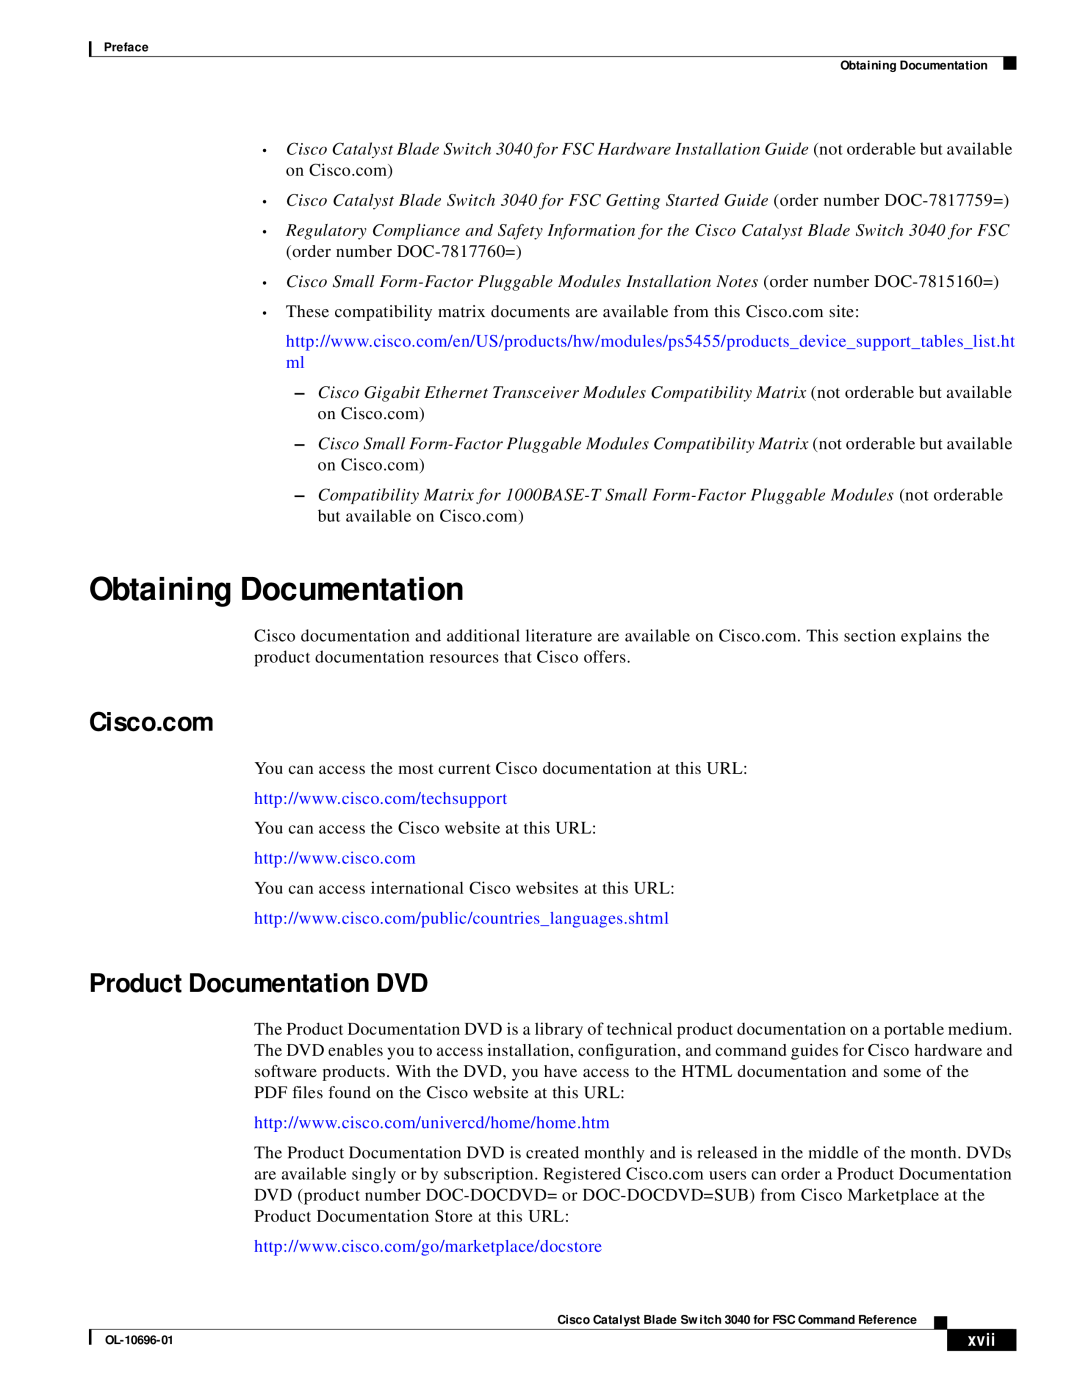 Cisco Systems 3040 manual Obtaining Documentation, Cisco.com, Product Documentation DVD, xvii 